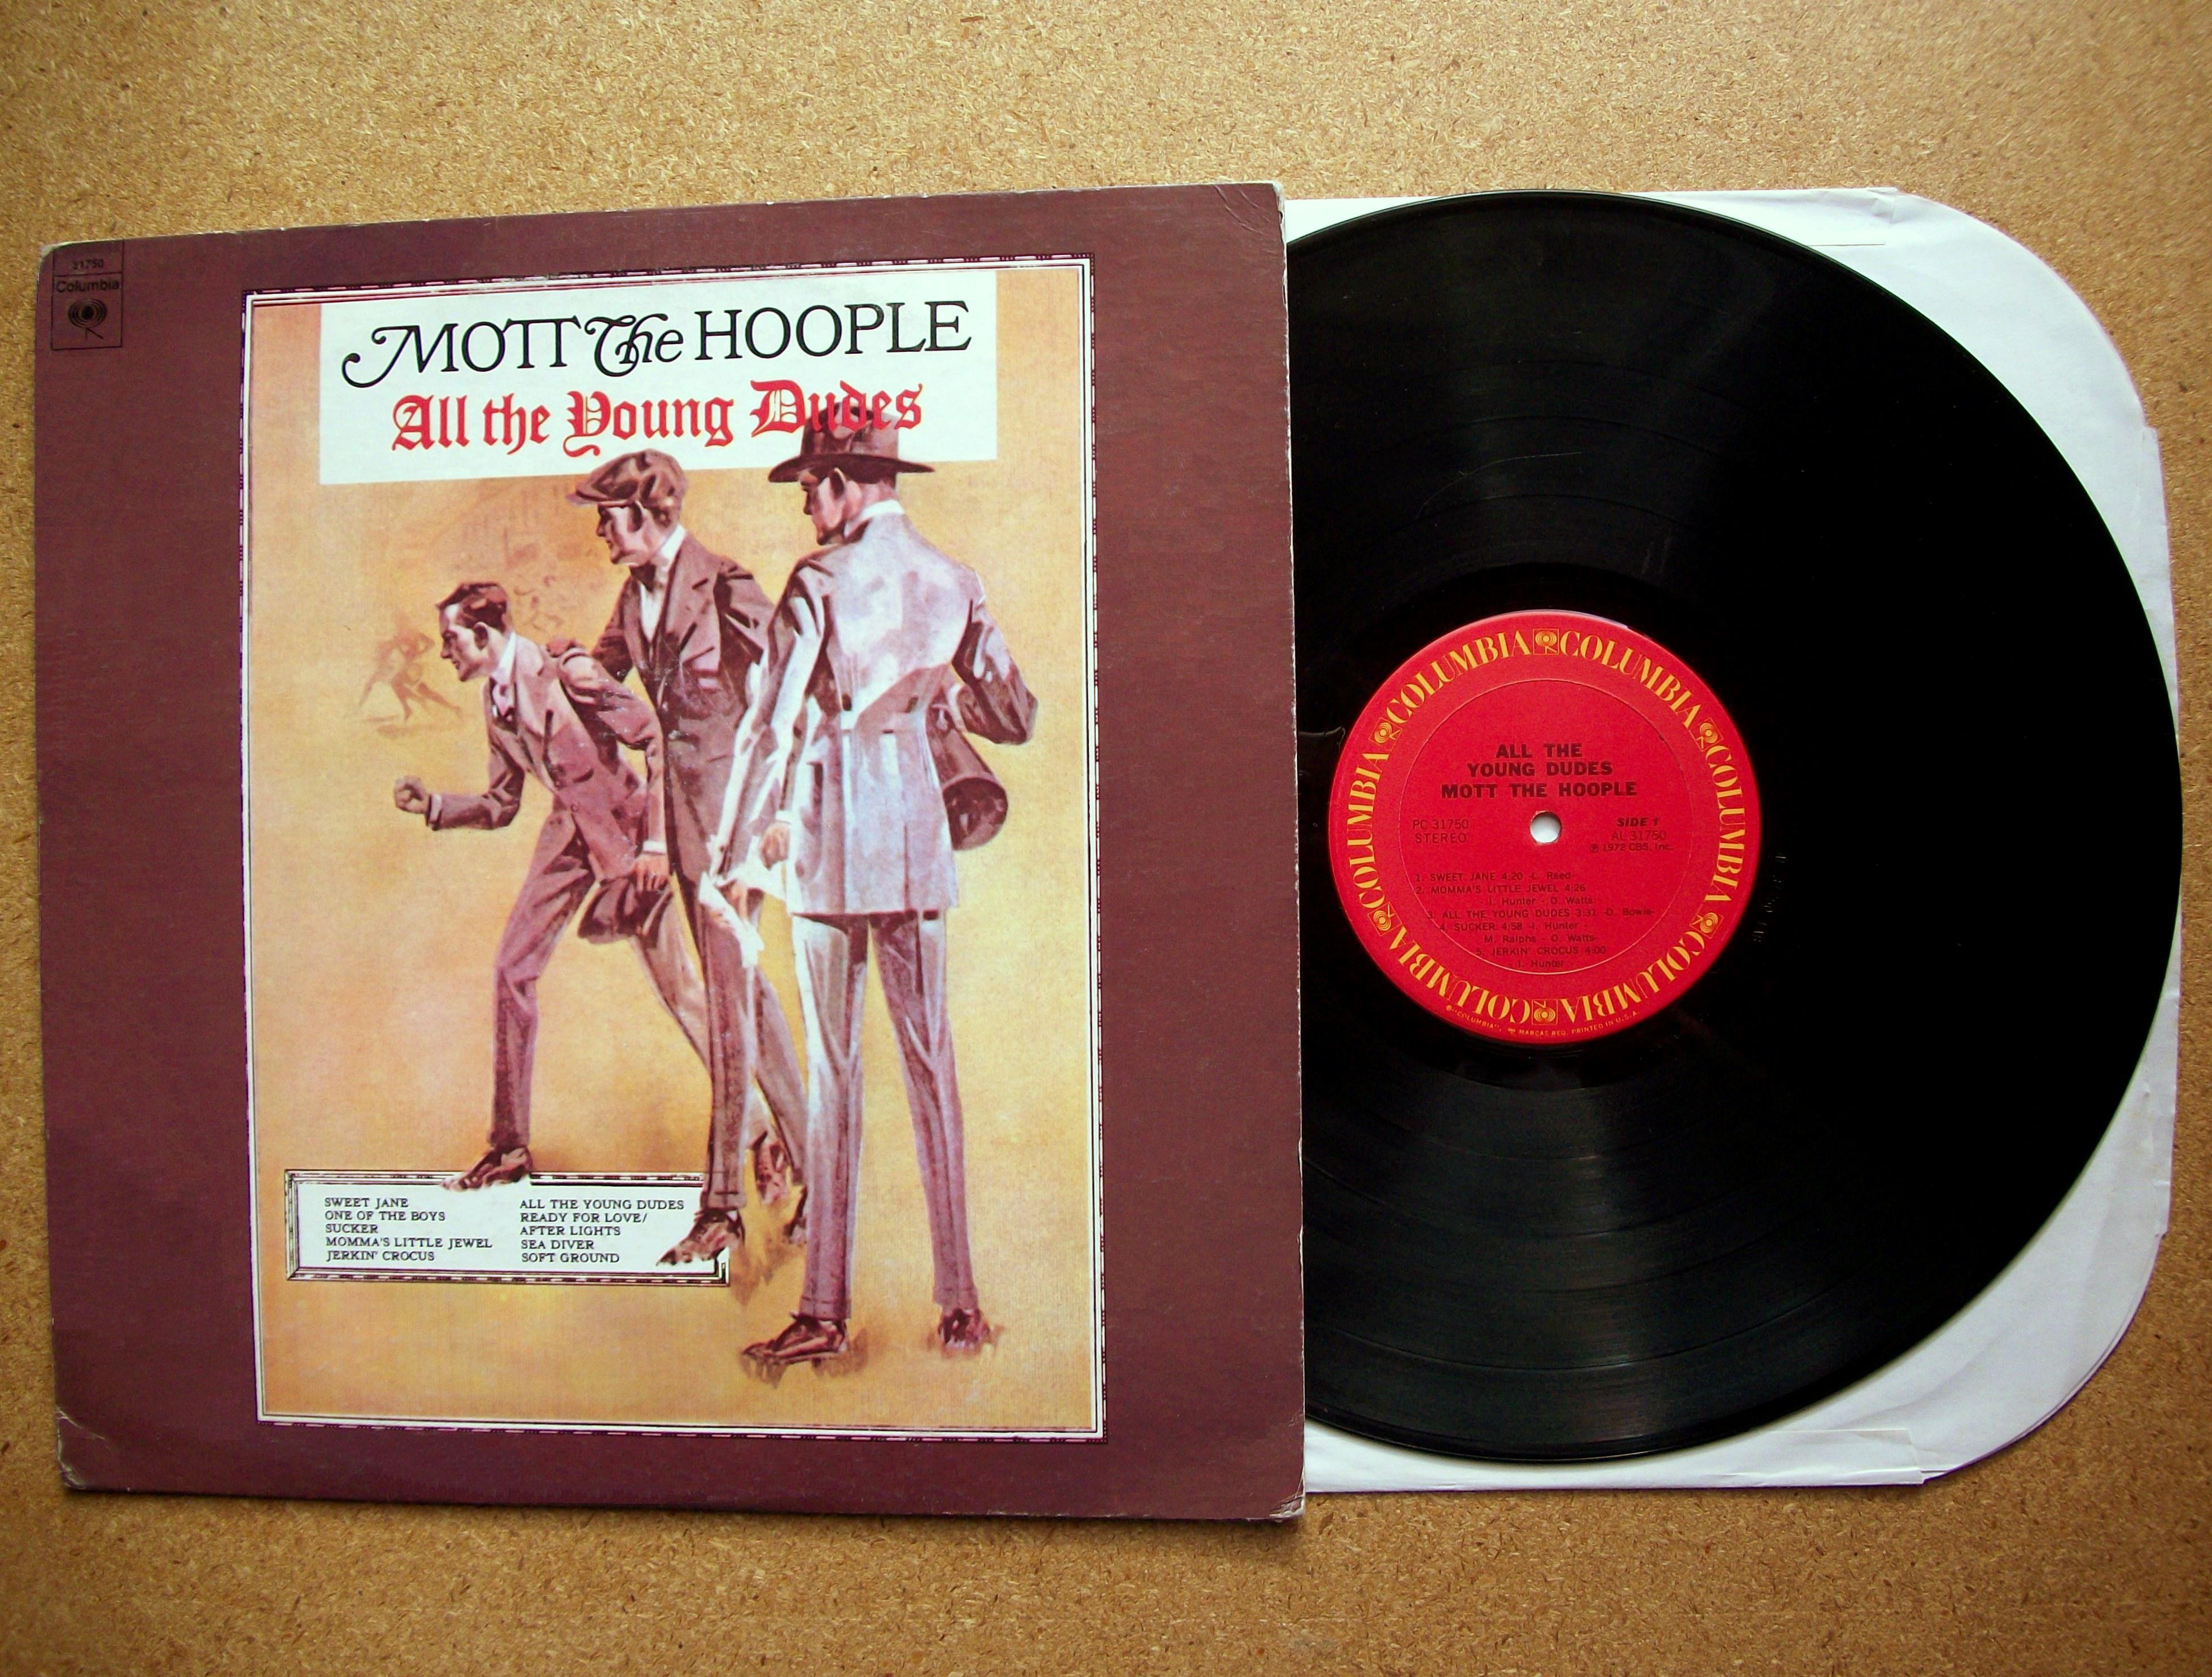 Альбомы 1972 года. Mott the Hoople Mott the Hoople 1969. Mott the Hoople all the young dudes 1972. Mott the Hoople shouting and pointing 1976. Mott the Hoople 1972 all the young dudes Cover.